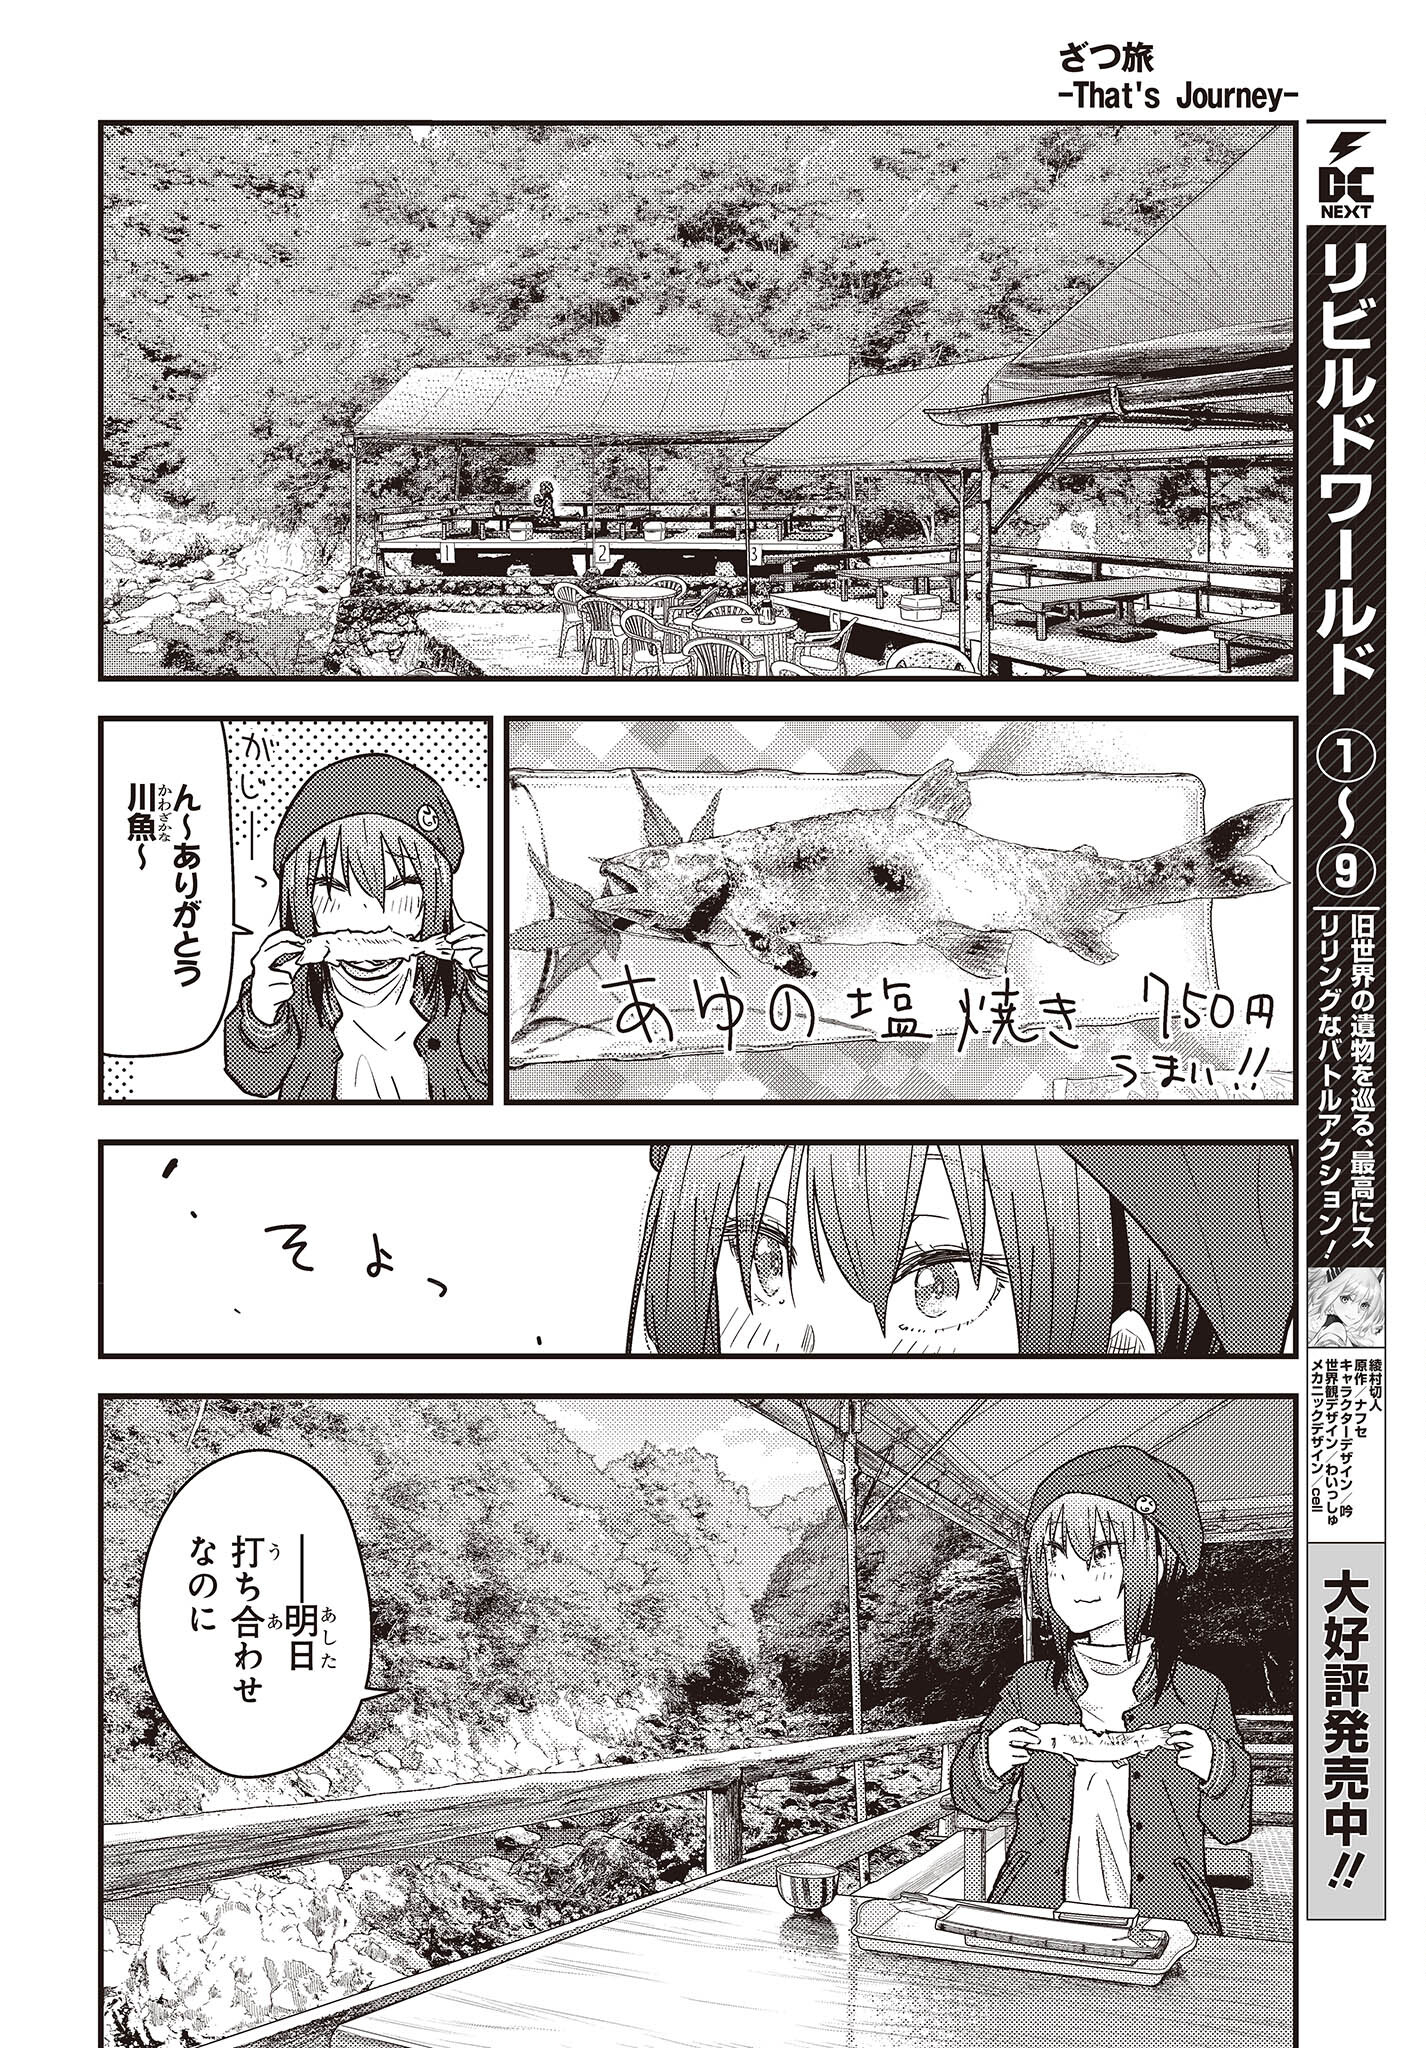 ざつ旅–That?s Journey– 第29話 - Page 20